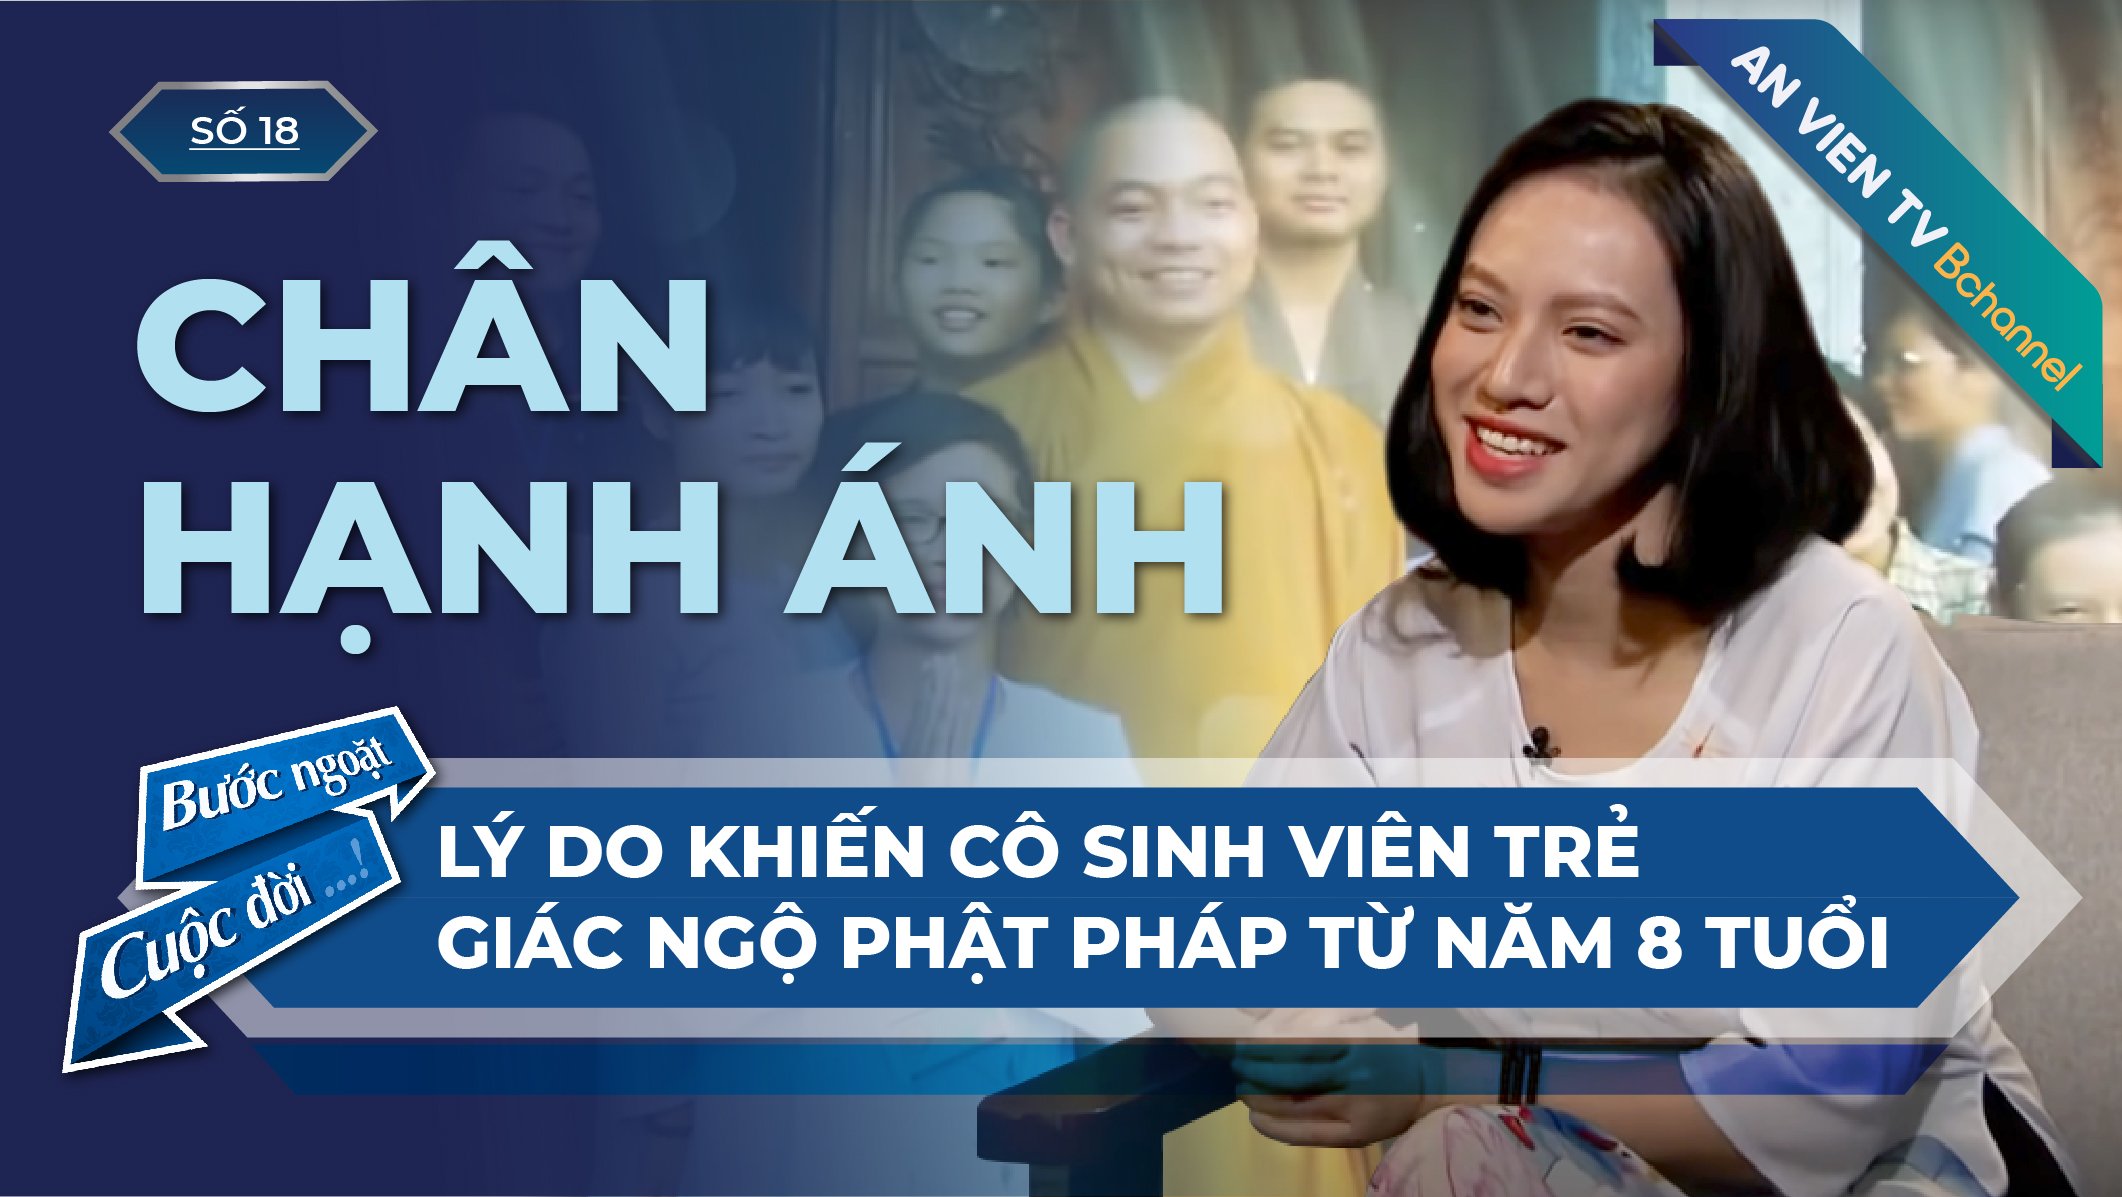 Cô sinh viên trẻ Thùy Linh (Pháp danh: Chân Hạnh Ánh) | Bước Ngoặt Cuộc Đời Số 18